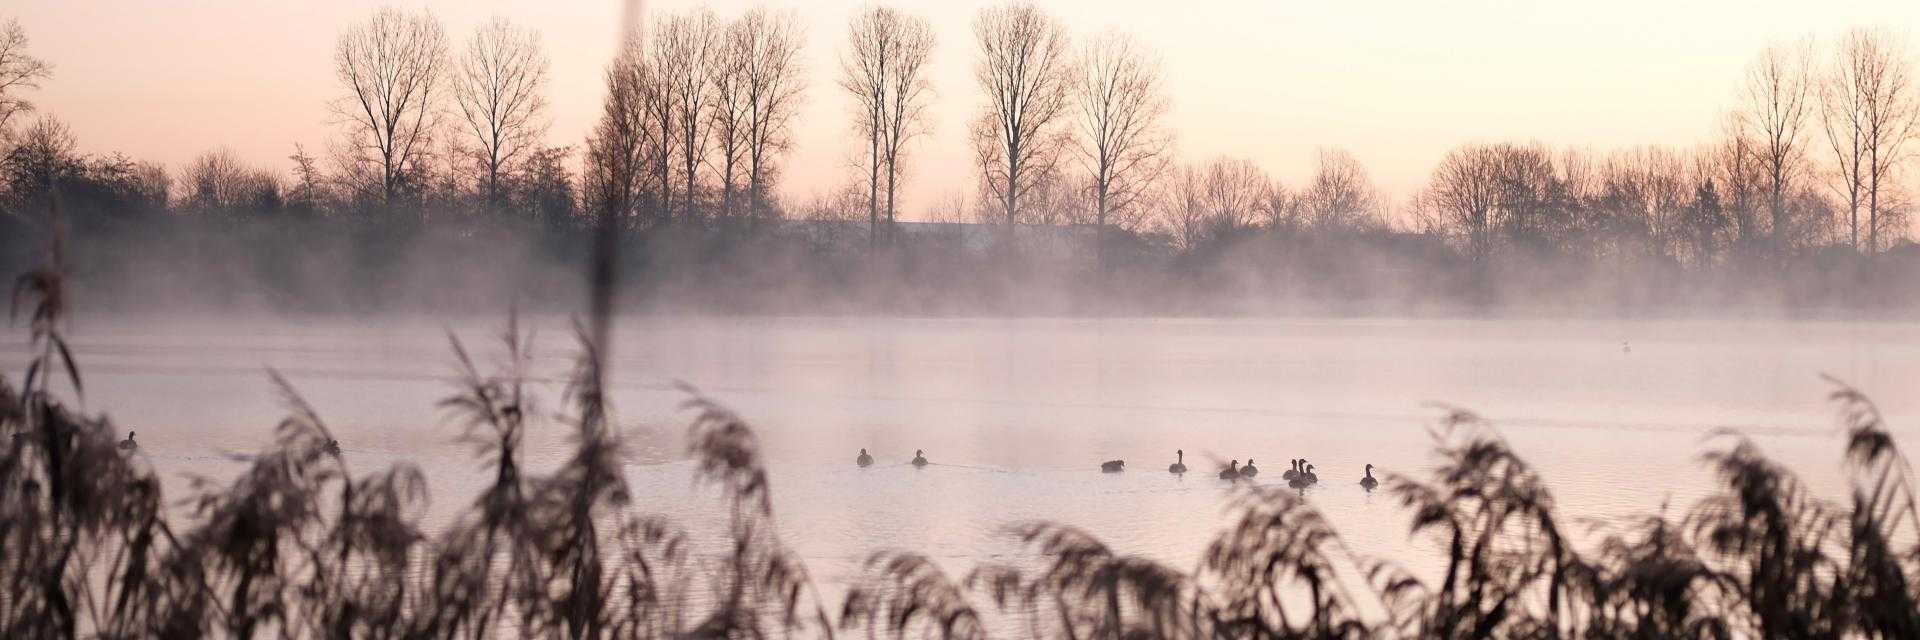 Haarlemmermeerse bos op hele koude dag tijdens zonsopkomst.